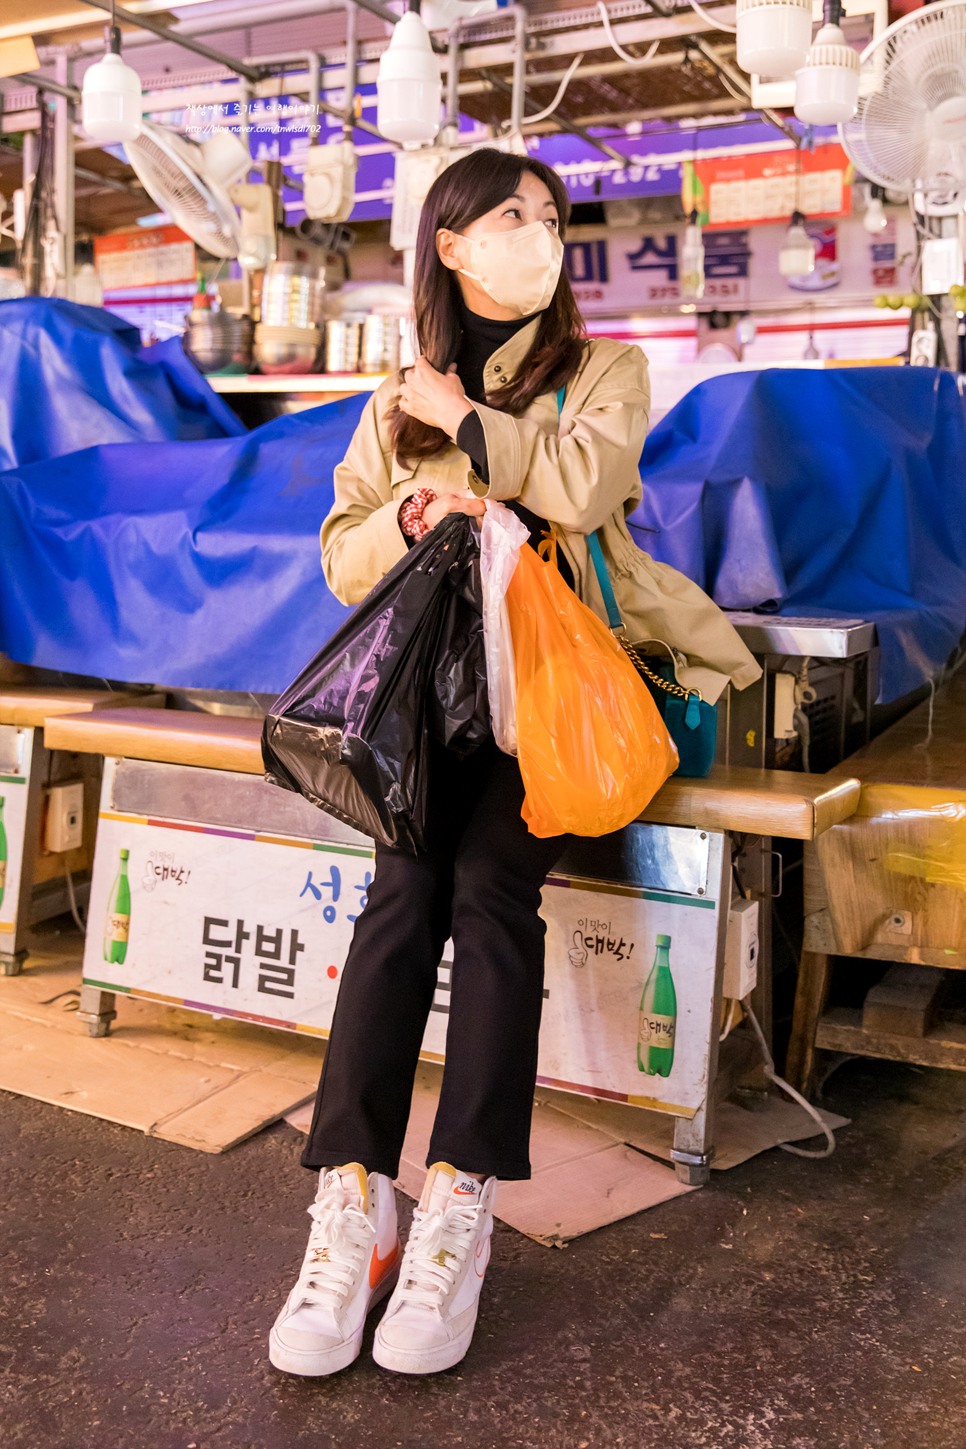 11월 전통시장가는날 이벤트 소식과 서울 광장시장 먹거리